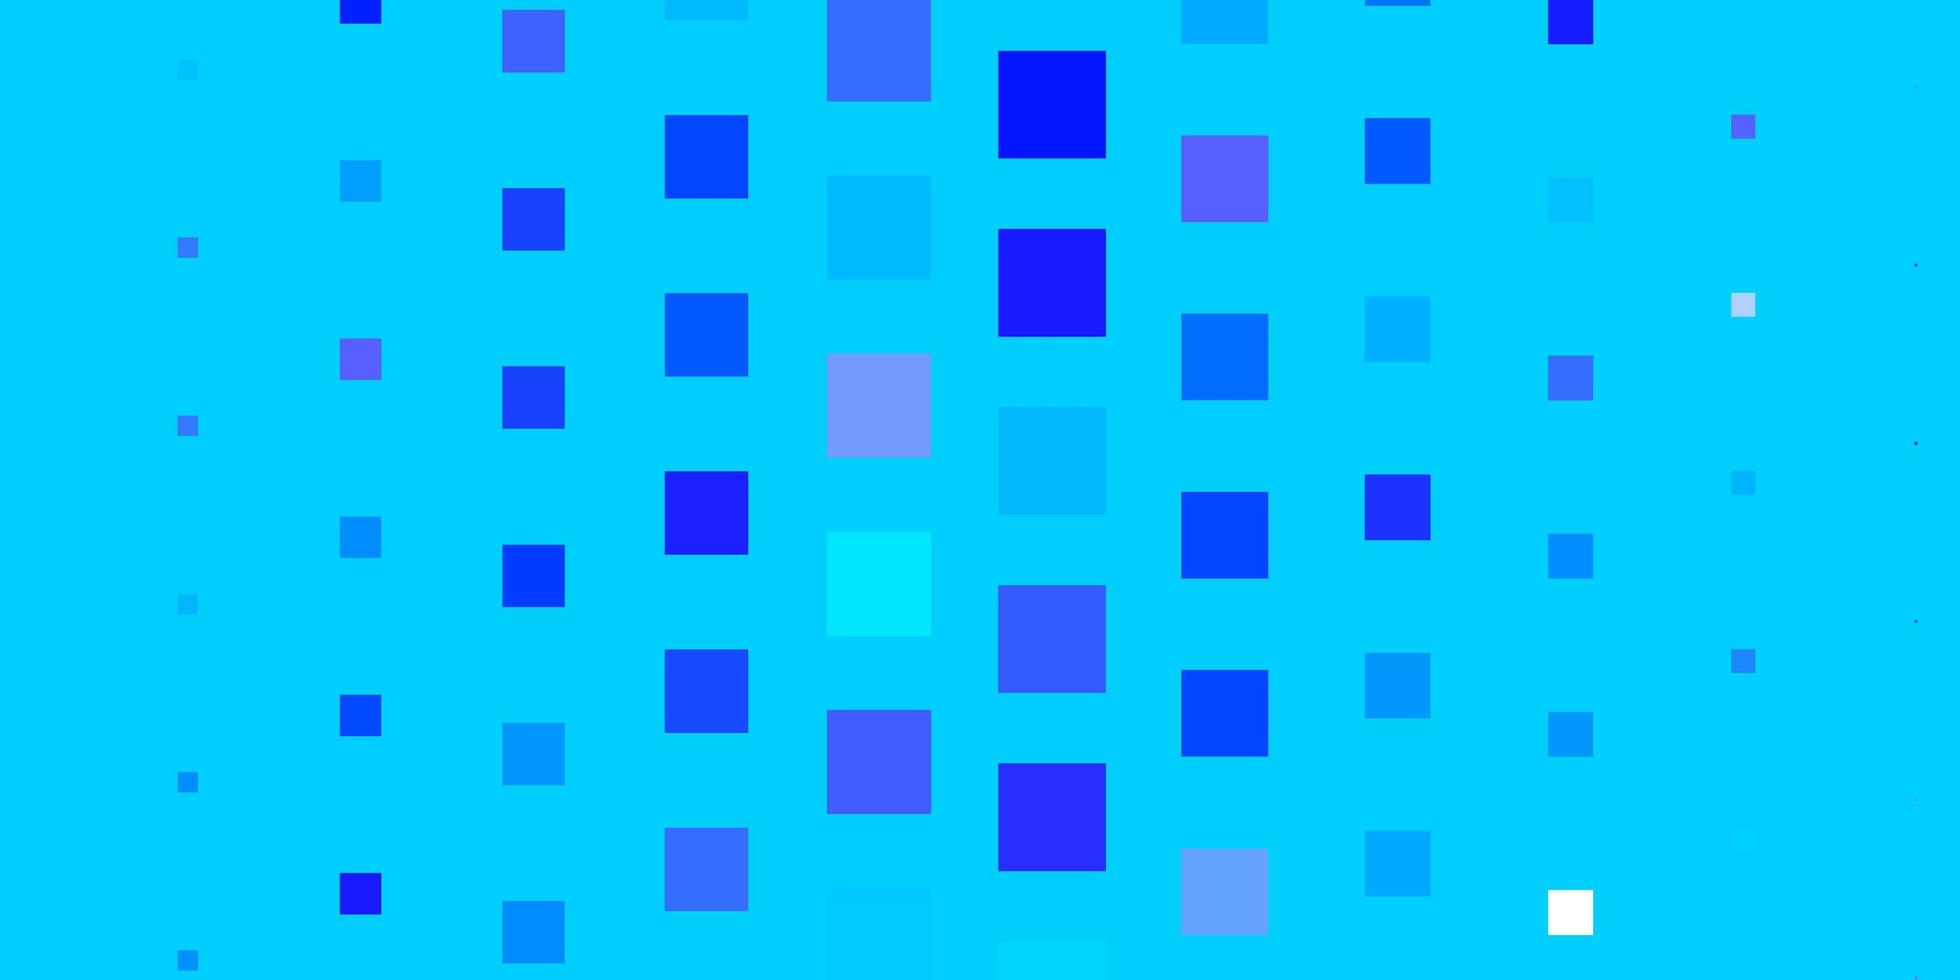 disposition de vecteur rose clair, bleu avec des lignes, des rectangles.